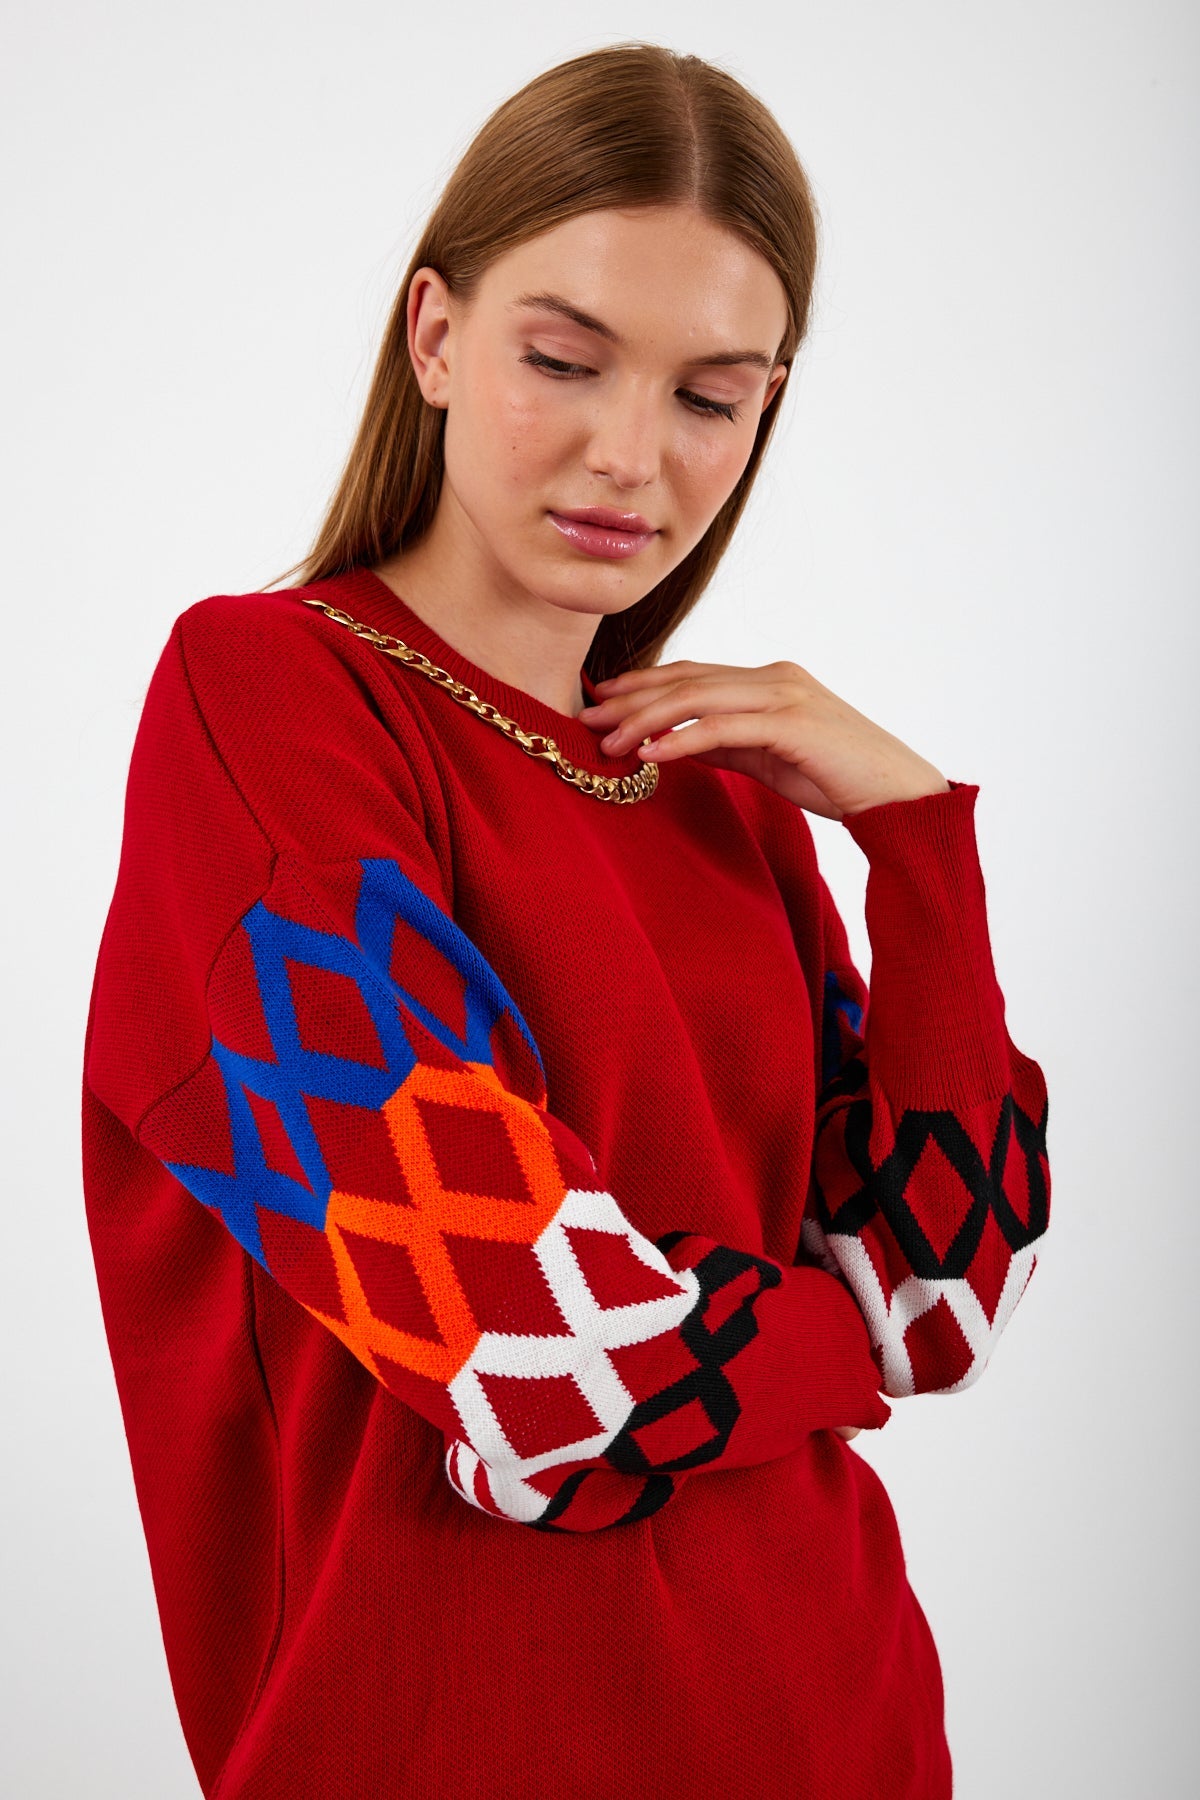 Knit Tunic Sweater Knit Mini Dress Arm Pattern Detailed- SKU: 3010